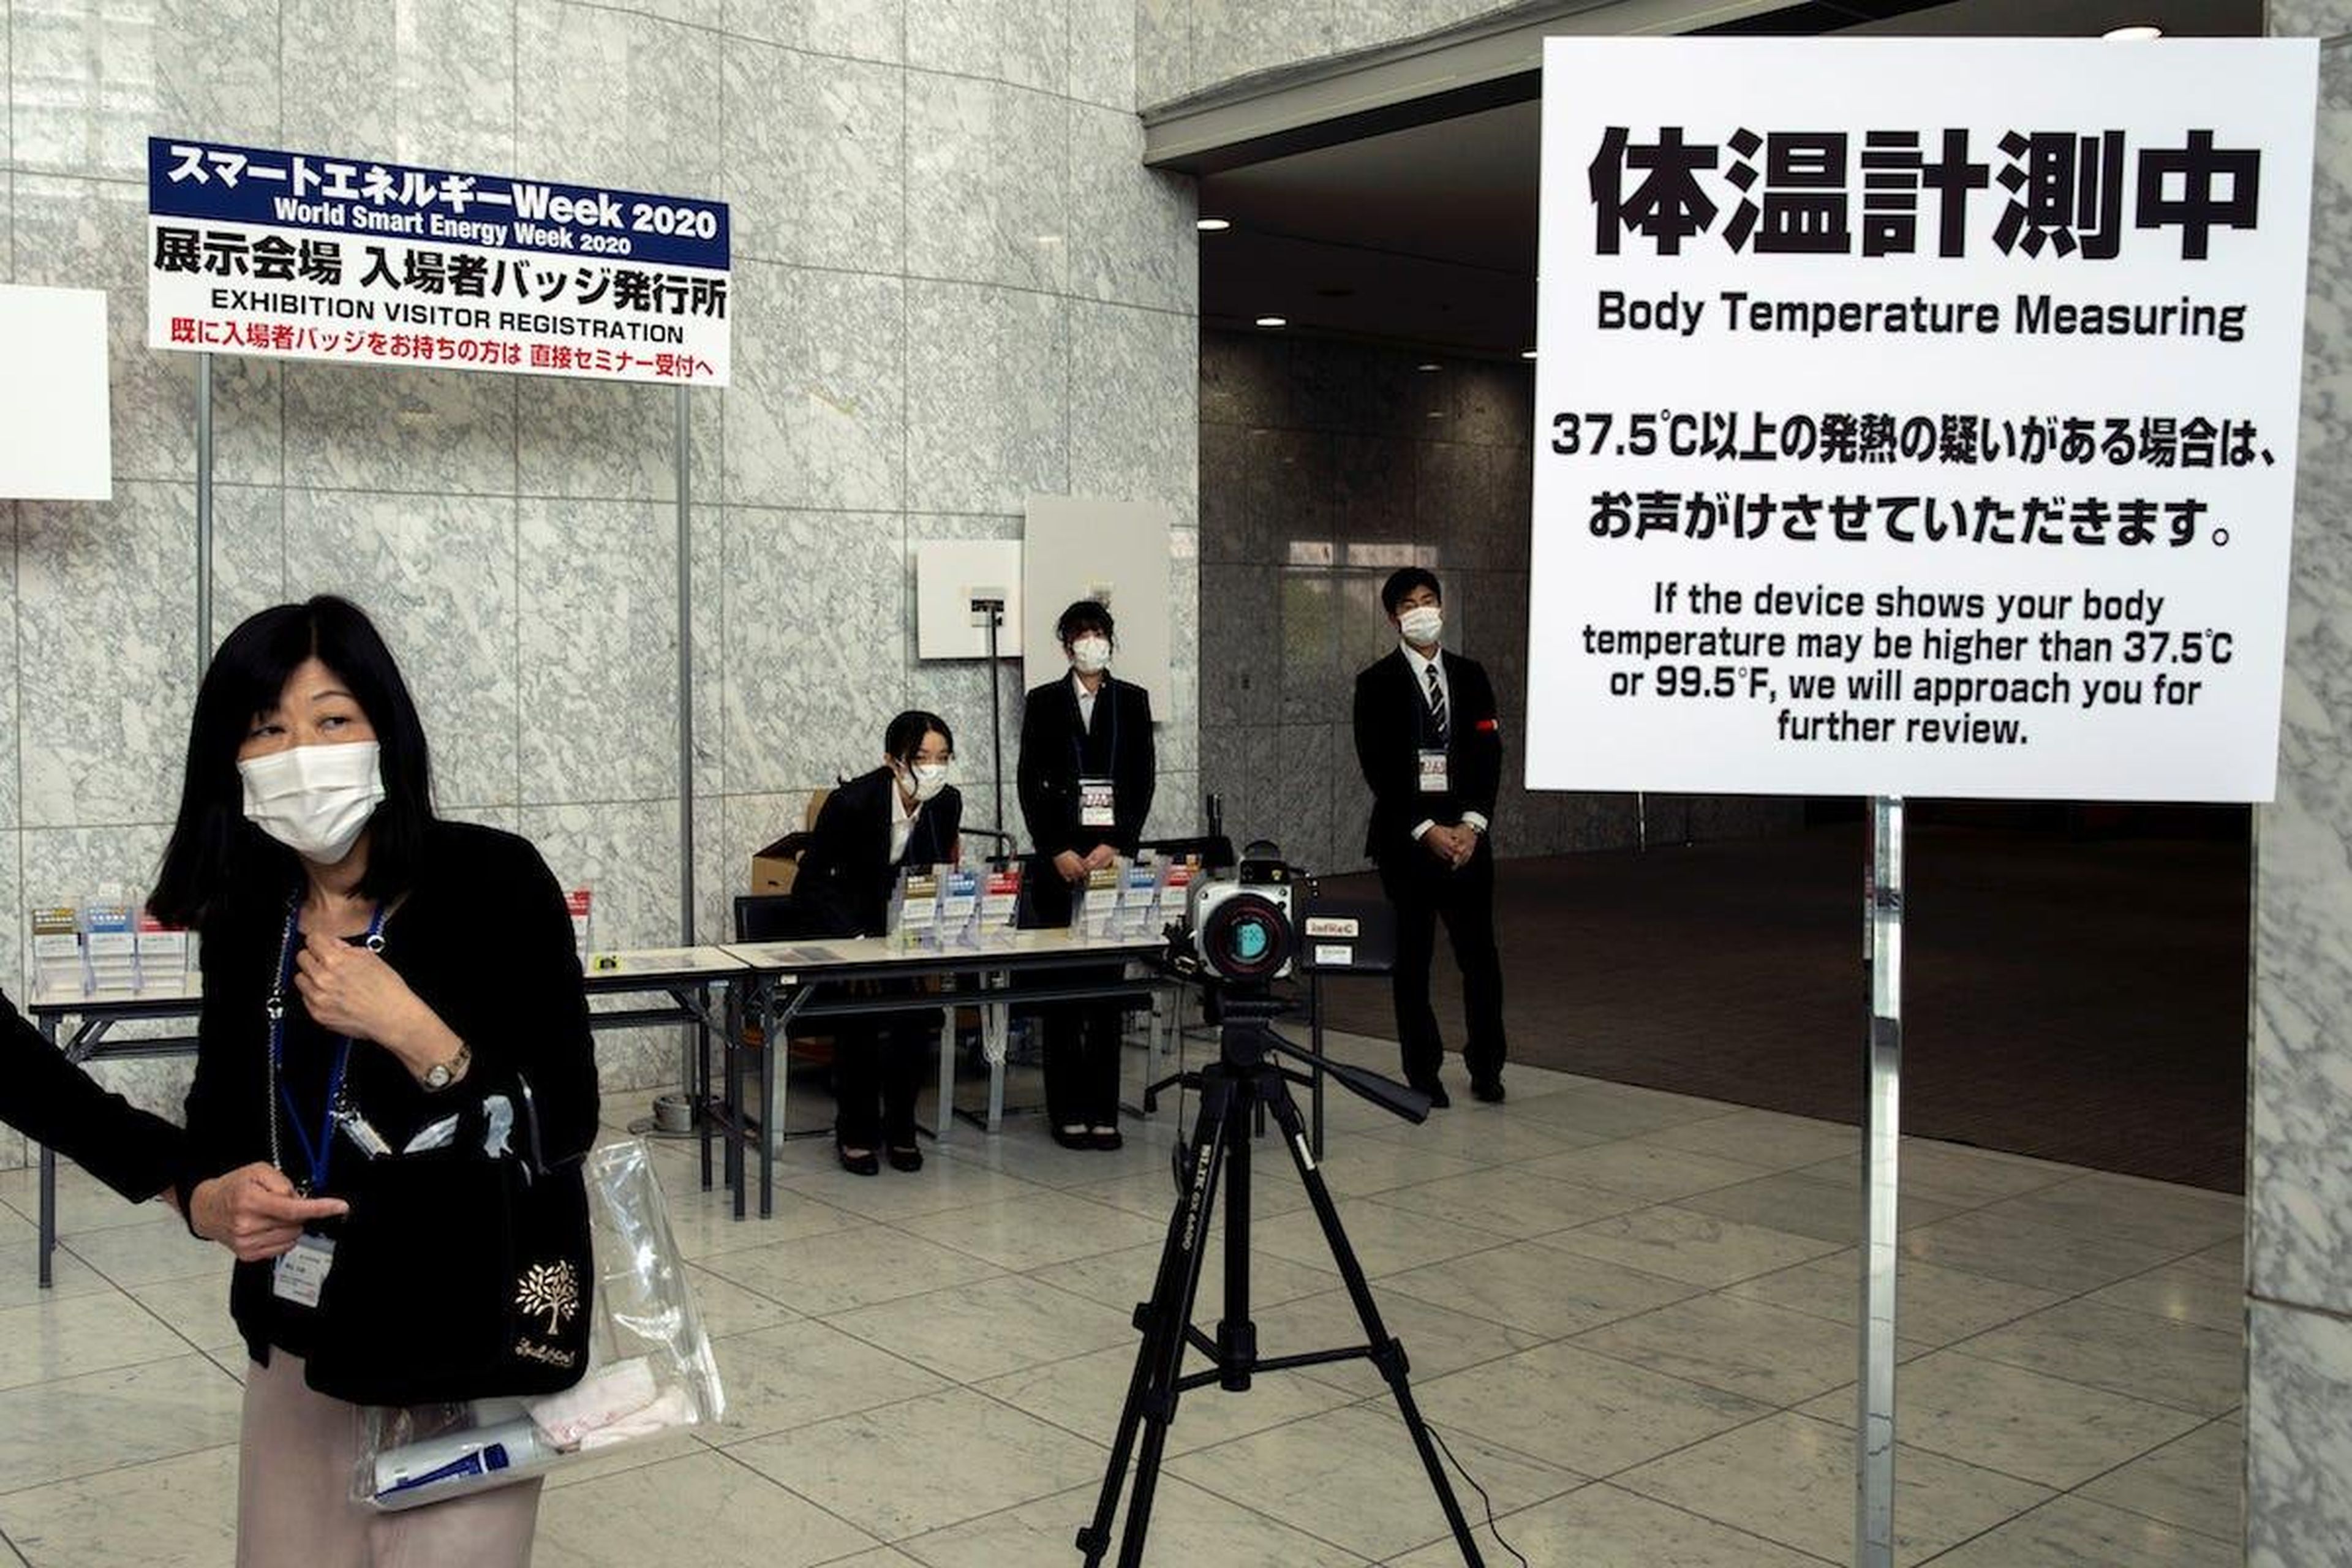 Personas con mascarillas cerca de una máquina que mide la temperatura corporal en un salón de convenciones en Tokio, Japón, el 27 de febrero de 2020.